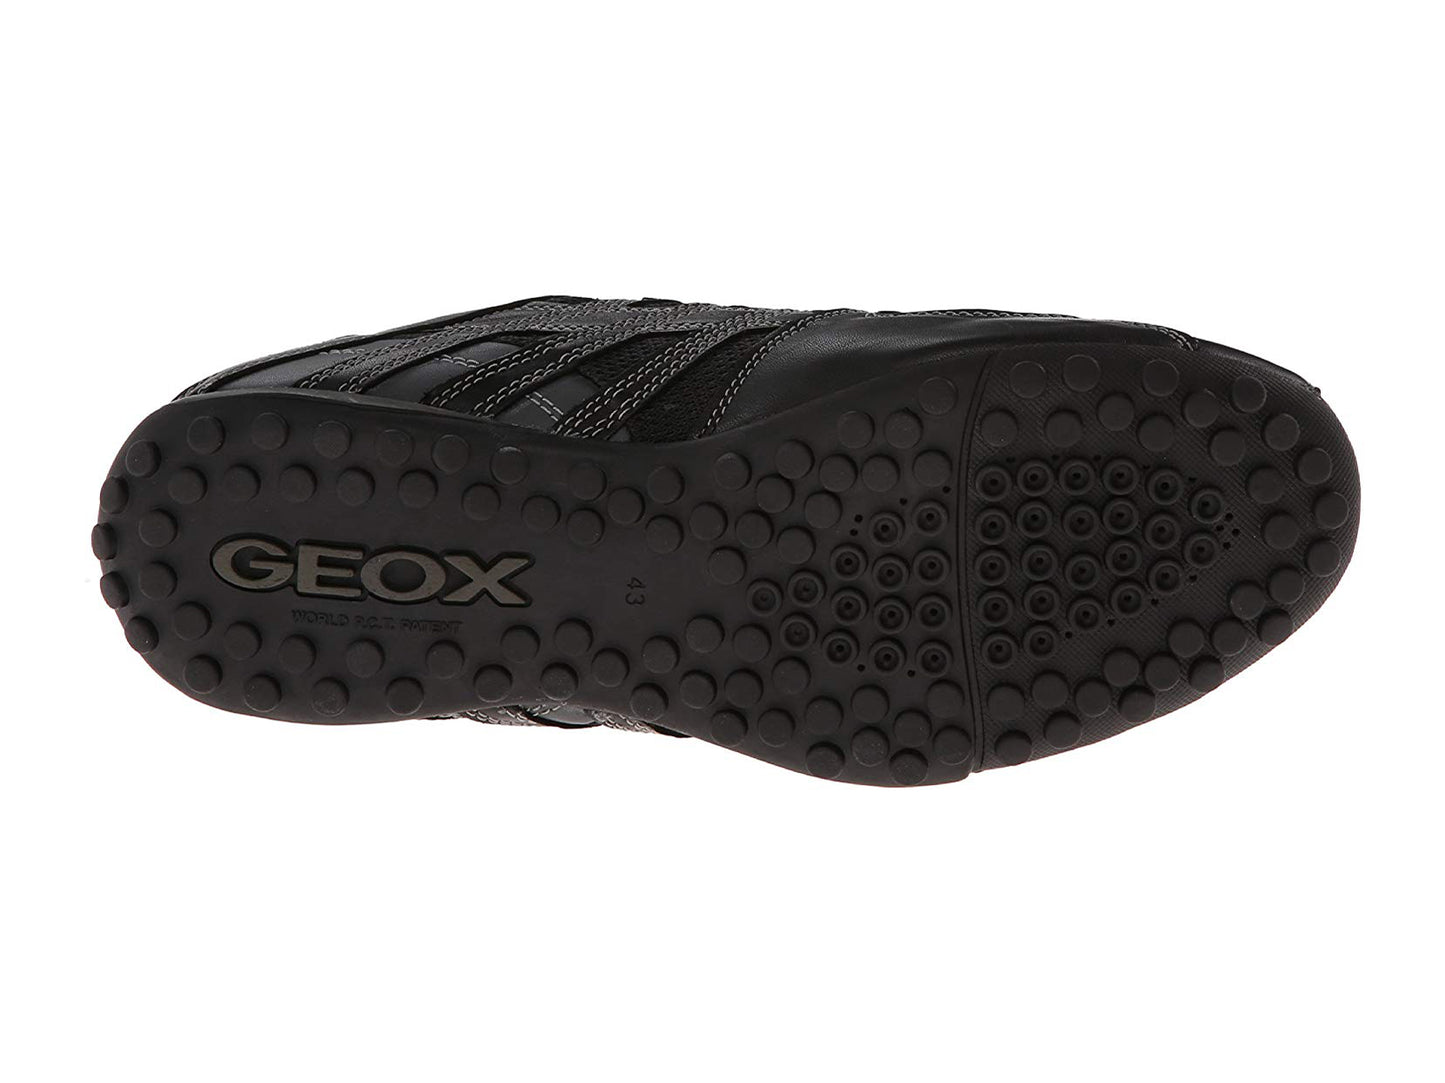 Geox Men's Snake 97 Fashion Sneaker